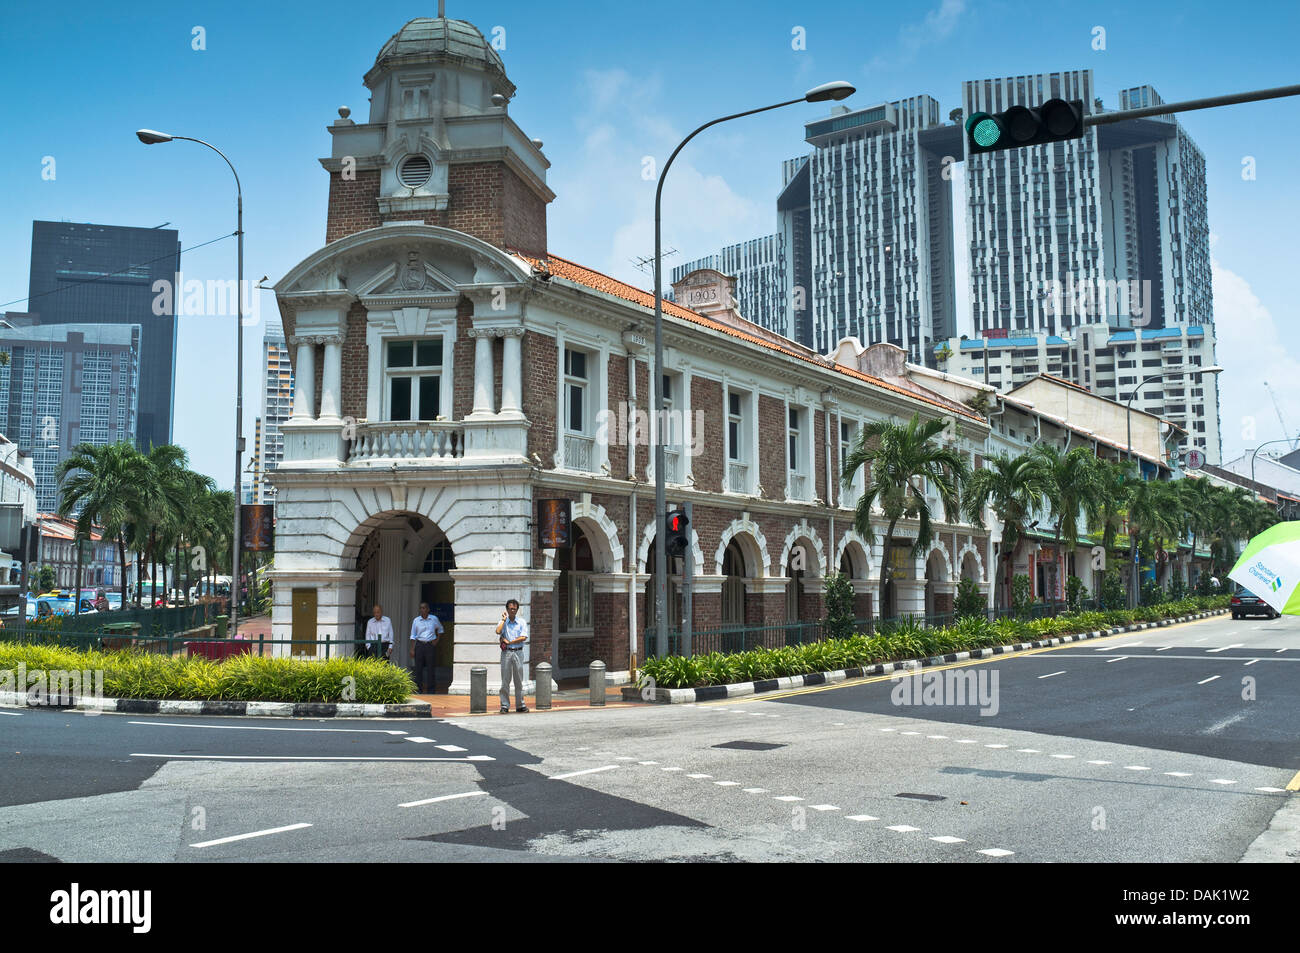 Dh stazione Jinrikisha Chinatown di Singapore storico edificio coloniale China town vecchio impero britannico Foto Stock